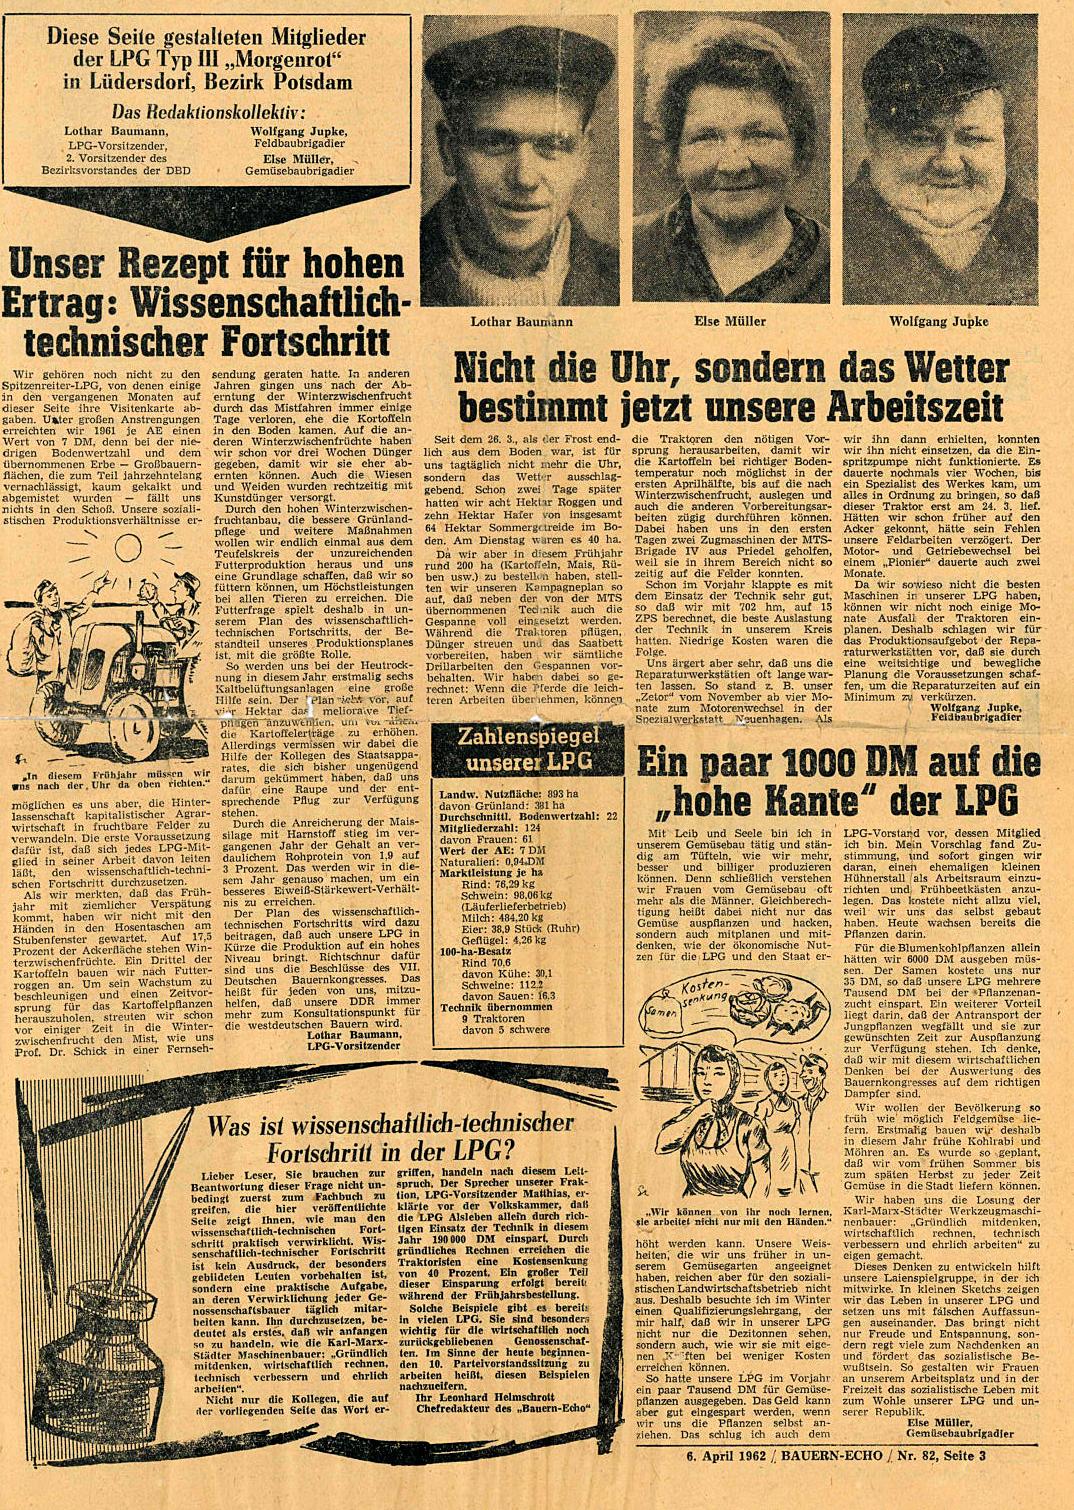 Historisches Dokument: Artikel im "Bauernecho" vom 6.4.1962 "Unser Rezept für hohen Ertrag: Wissenschaftlich-technischer Fortschritt"